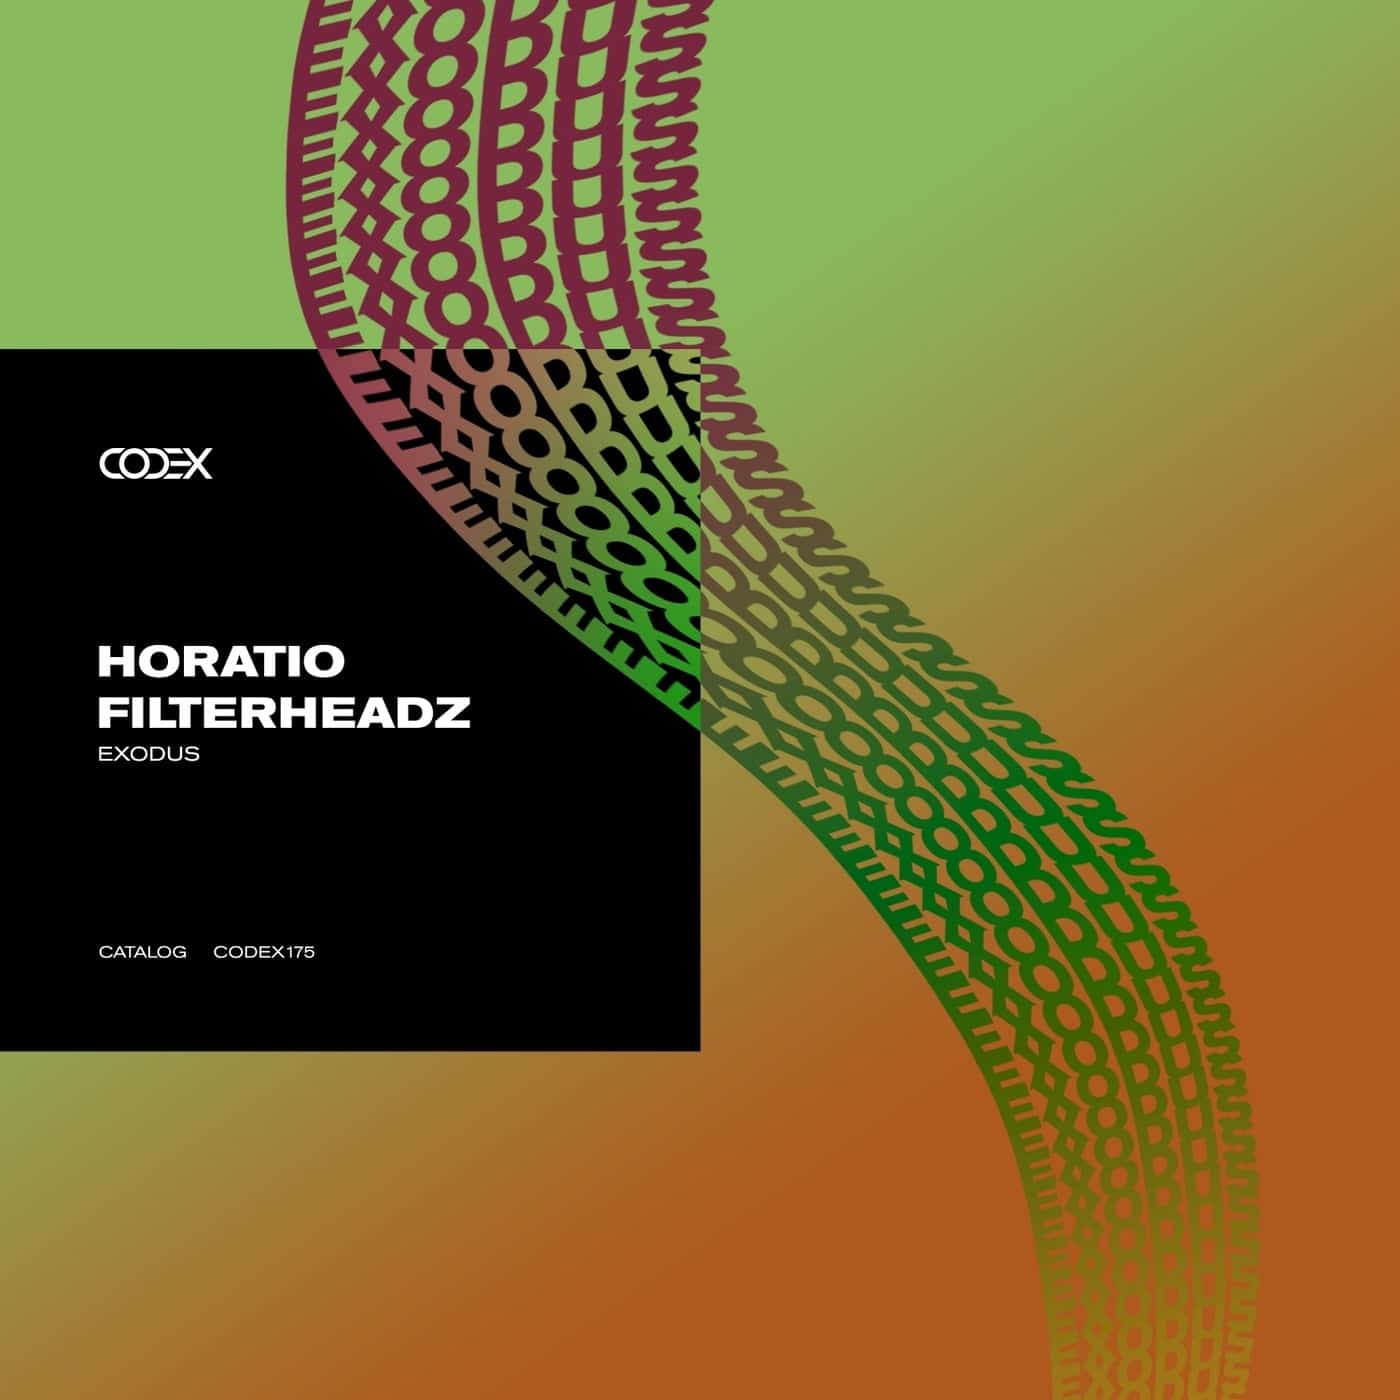 Download Filterheadz, Horatio - Exodus on Electrobuzz